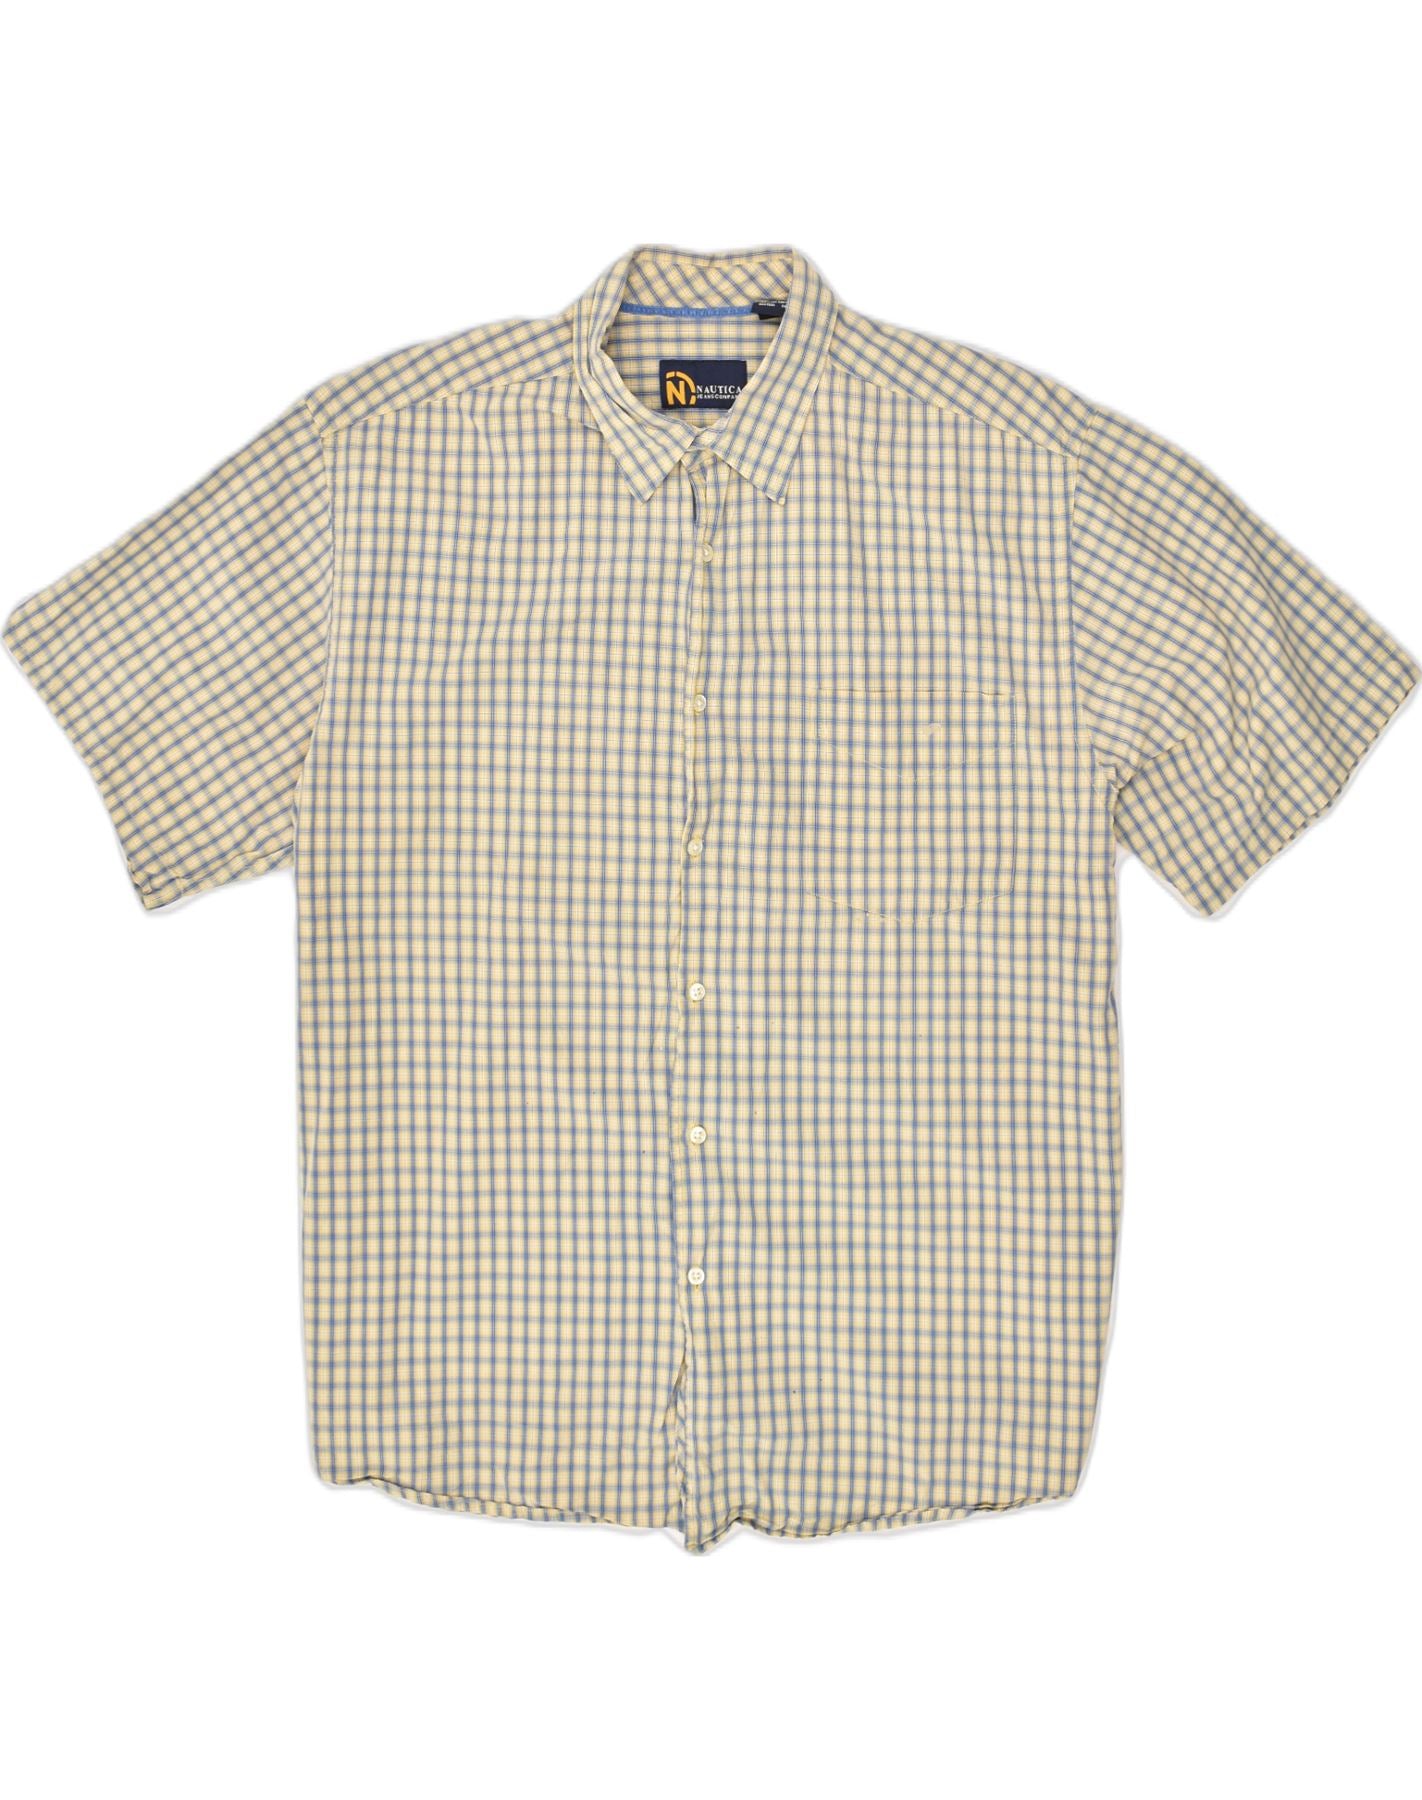 Nautica Checkered Short Sleeve Shirt